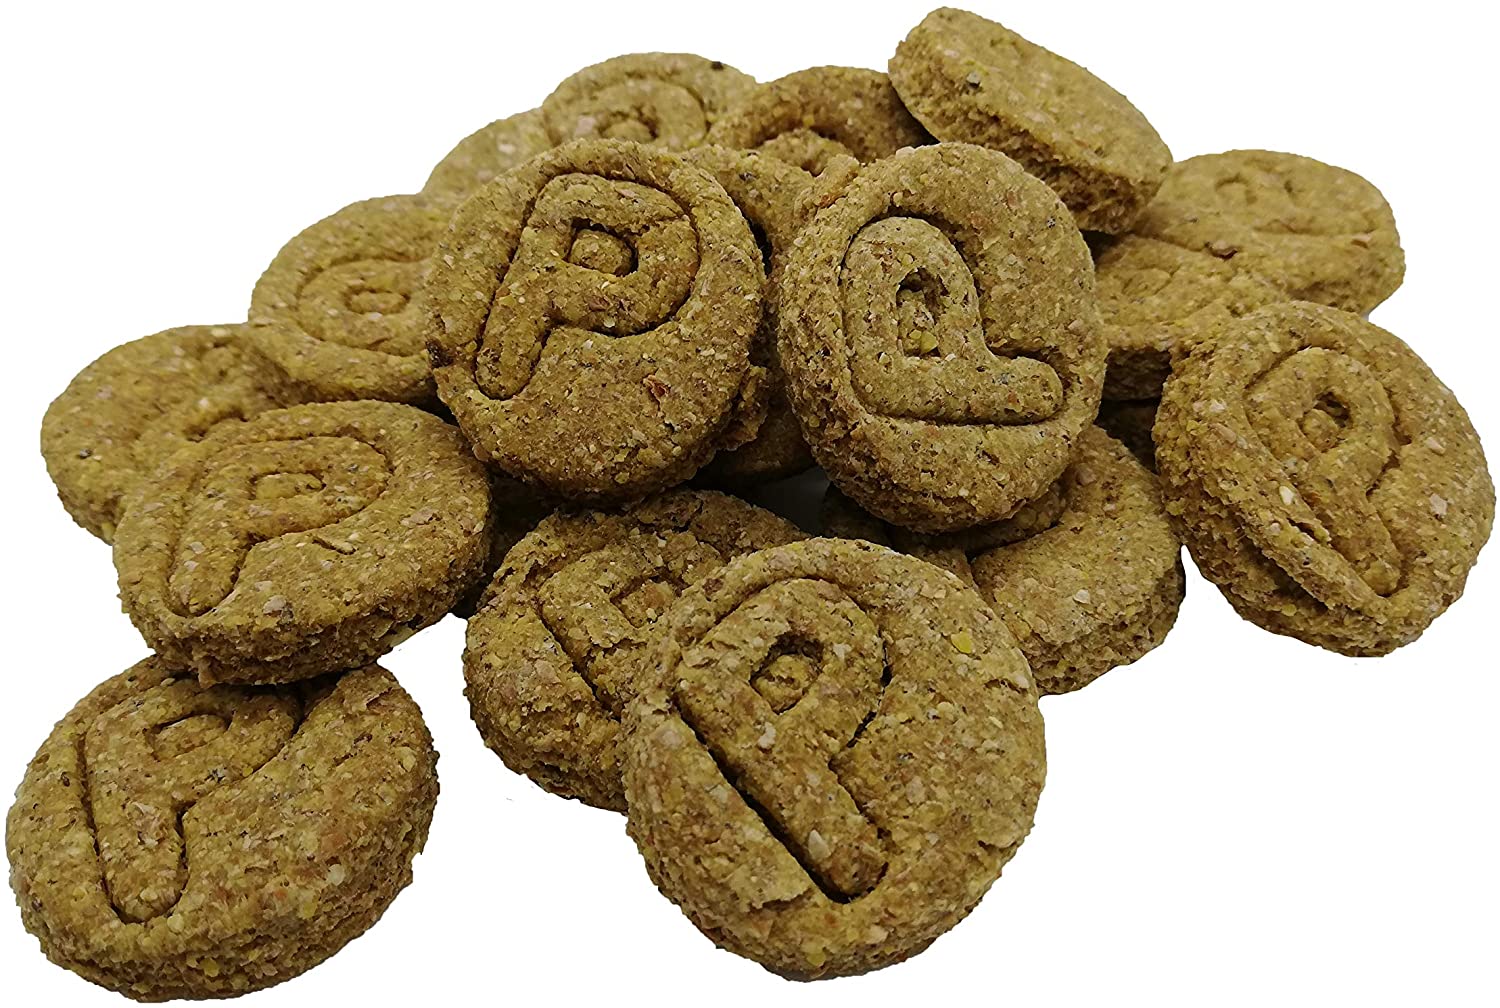  Waniyanpi Snacks para la Piel y Pelaje 1,2kg (6 Cajas x 200g)|Snacks para Regular y Proteger el sebo de la Piel de los Perros| con Aceite de Salmón 